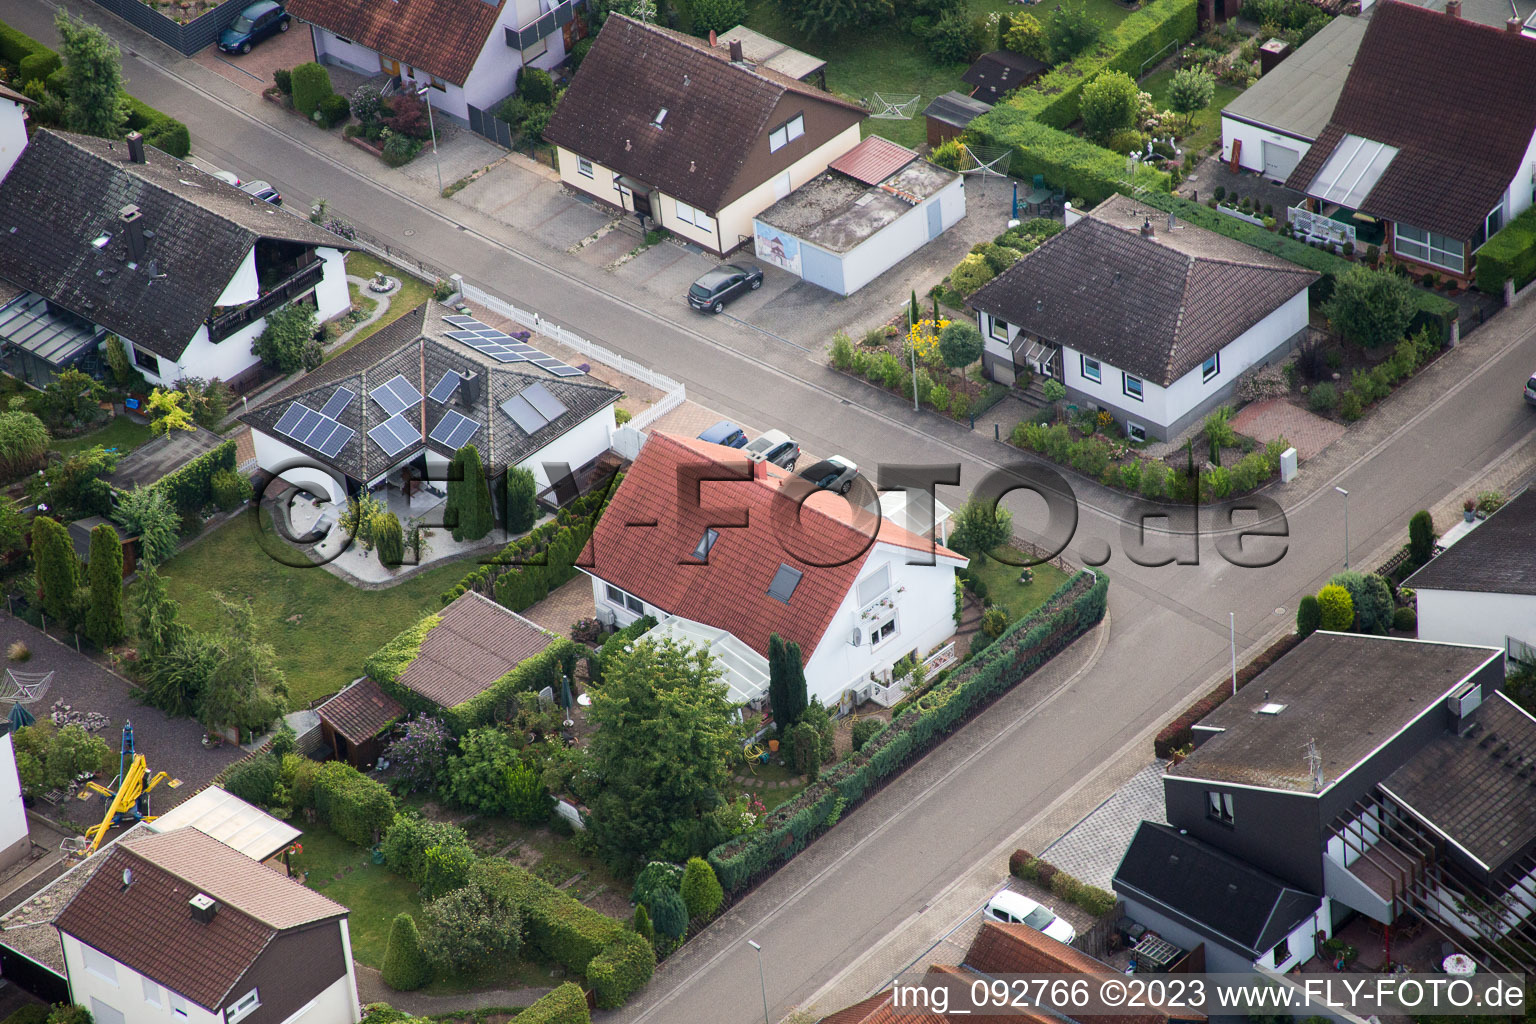 Billigheim-Ingenheim, Maxburgstr im Bundesland Rheinland-Pfalz, Deutschland von der Drohne aus gesehen